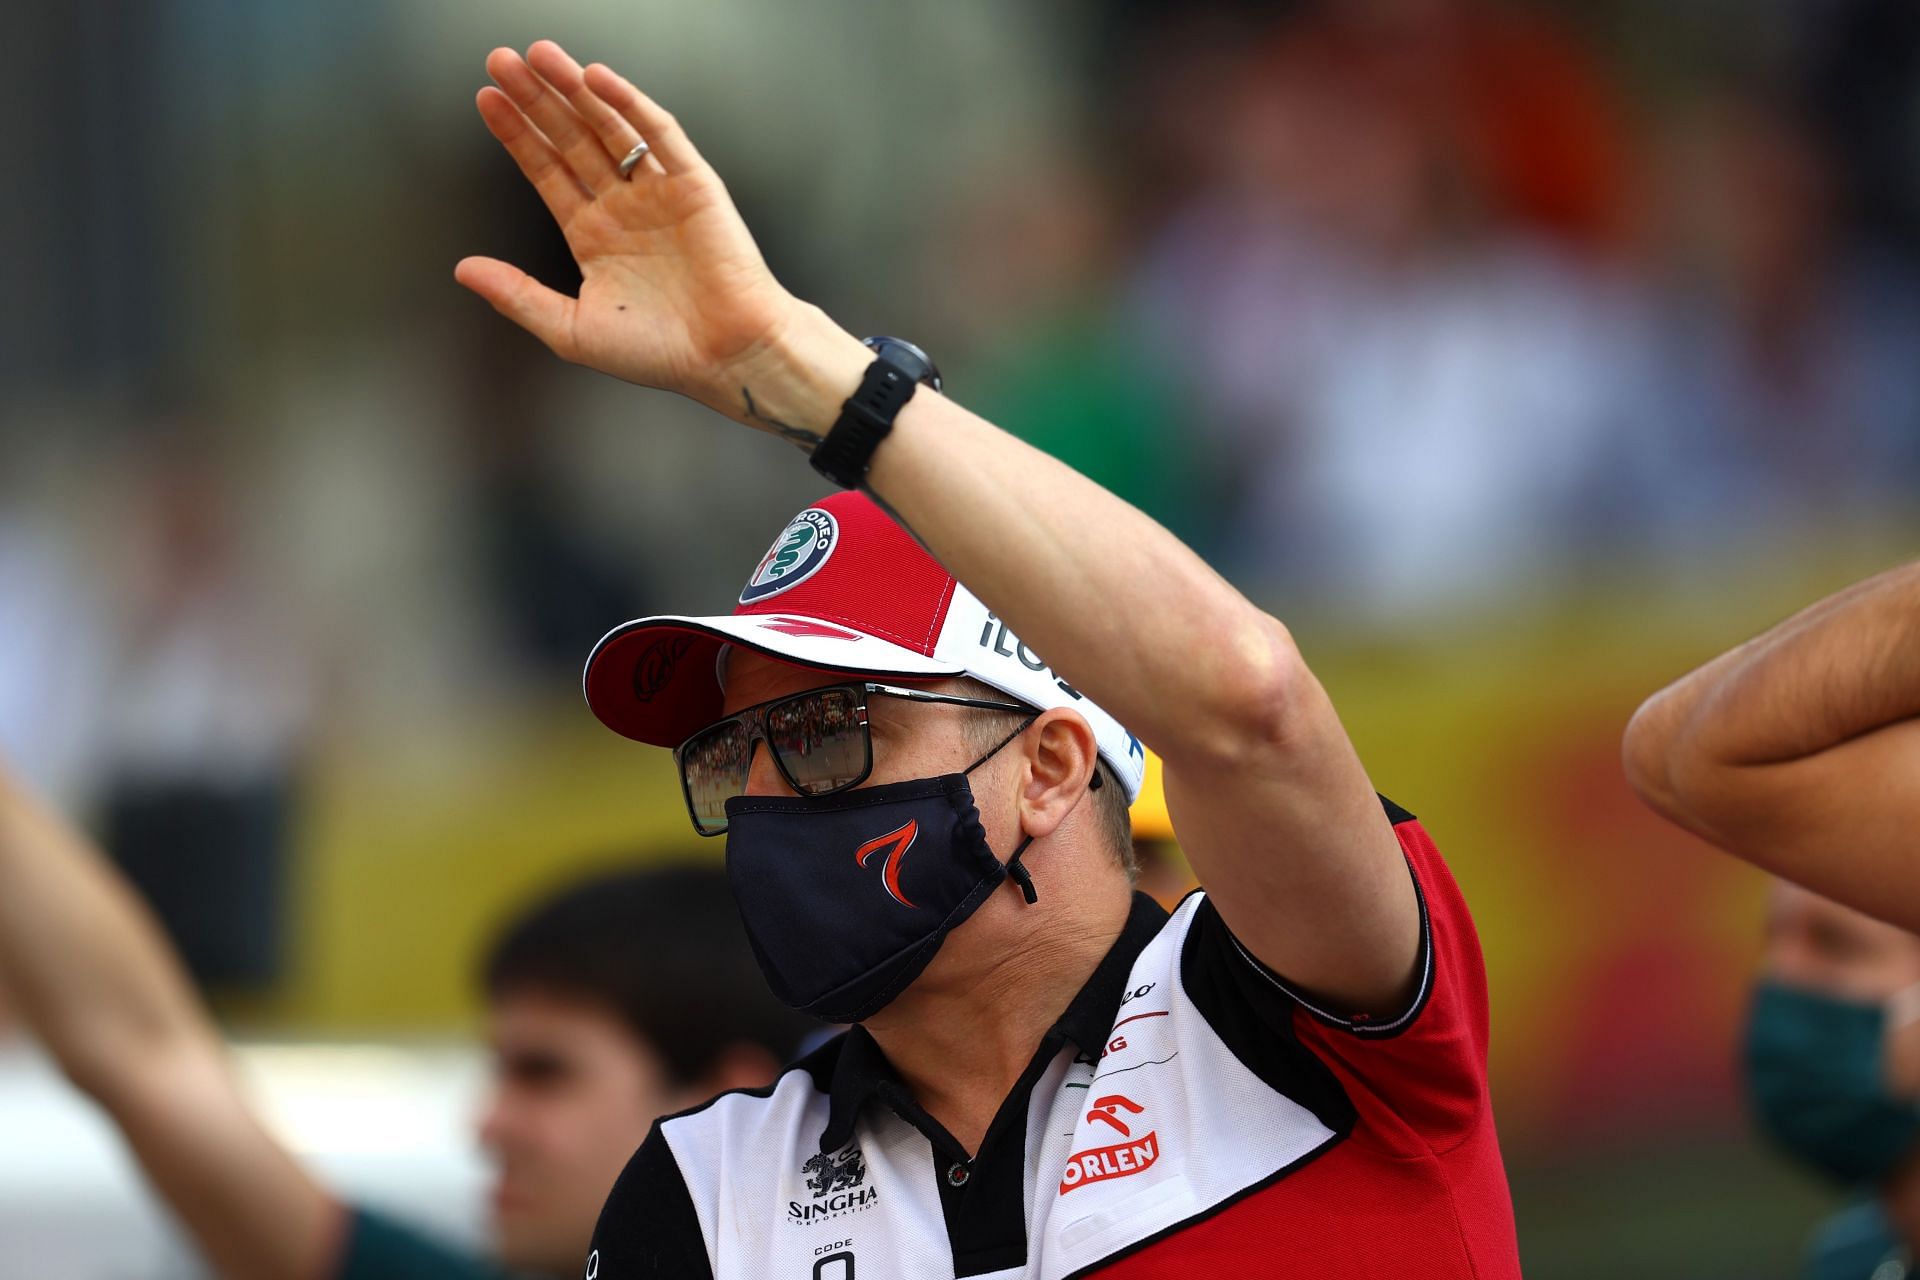 F1 Grand Prix of Abu Dhabi - Kimi Raikkonen waves goodbye to F1.